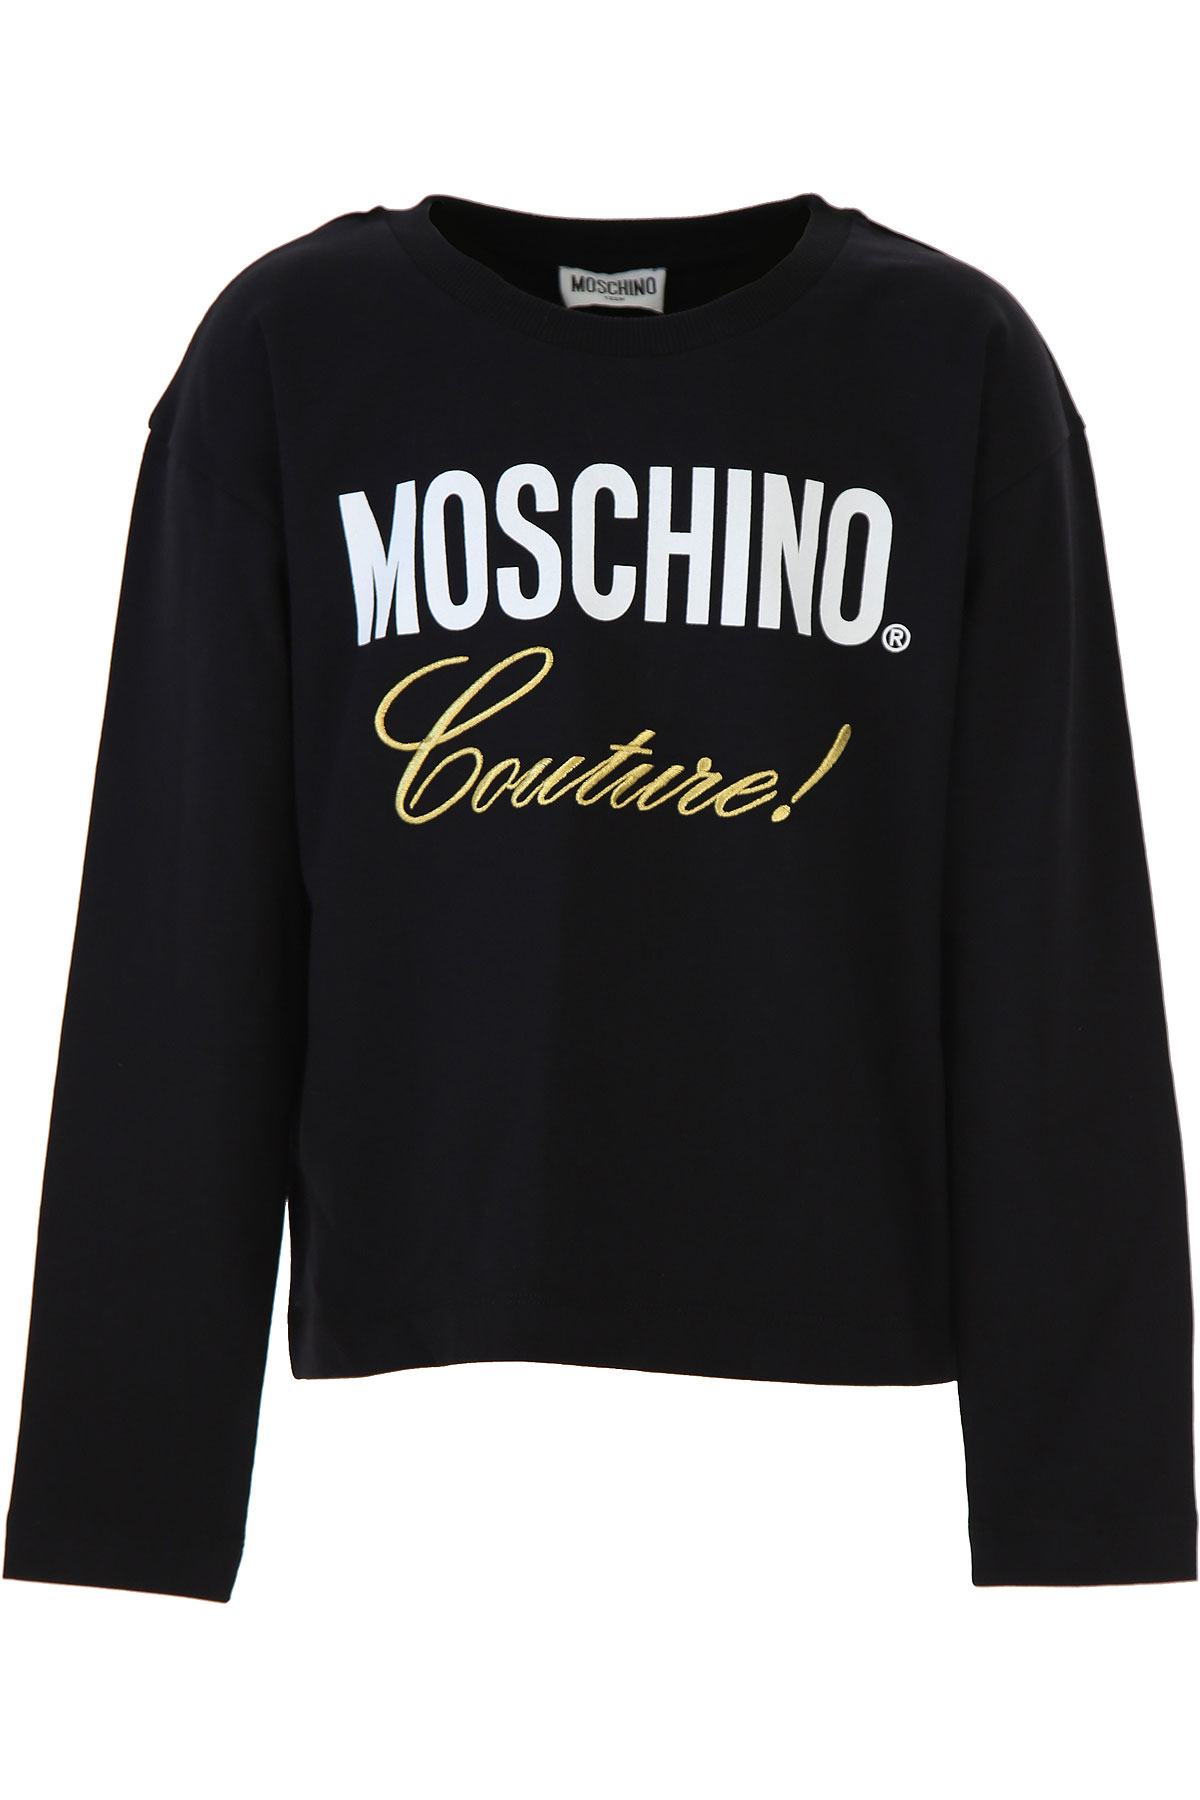 Moschino Kinder T-Shirt für Mädchen Günstig im Sale, Schwarz, Baumwolle, 2017, 12Y 14Y 8Y